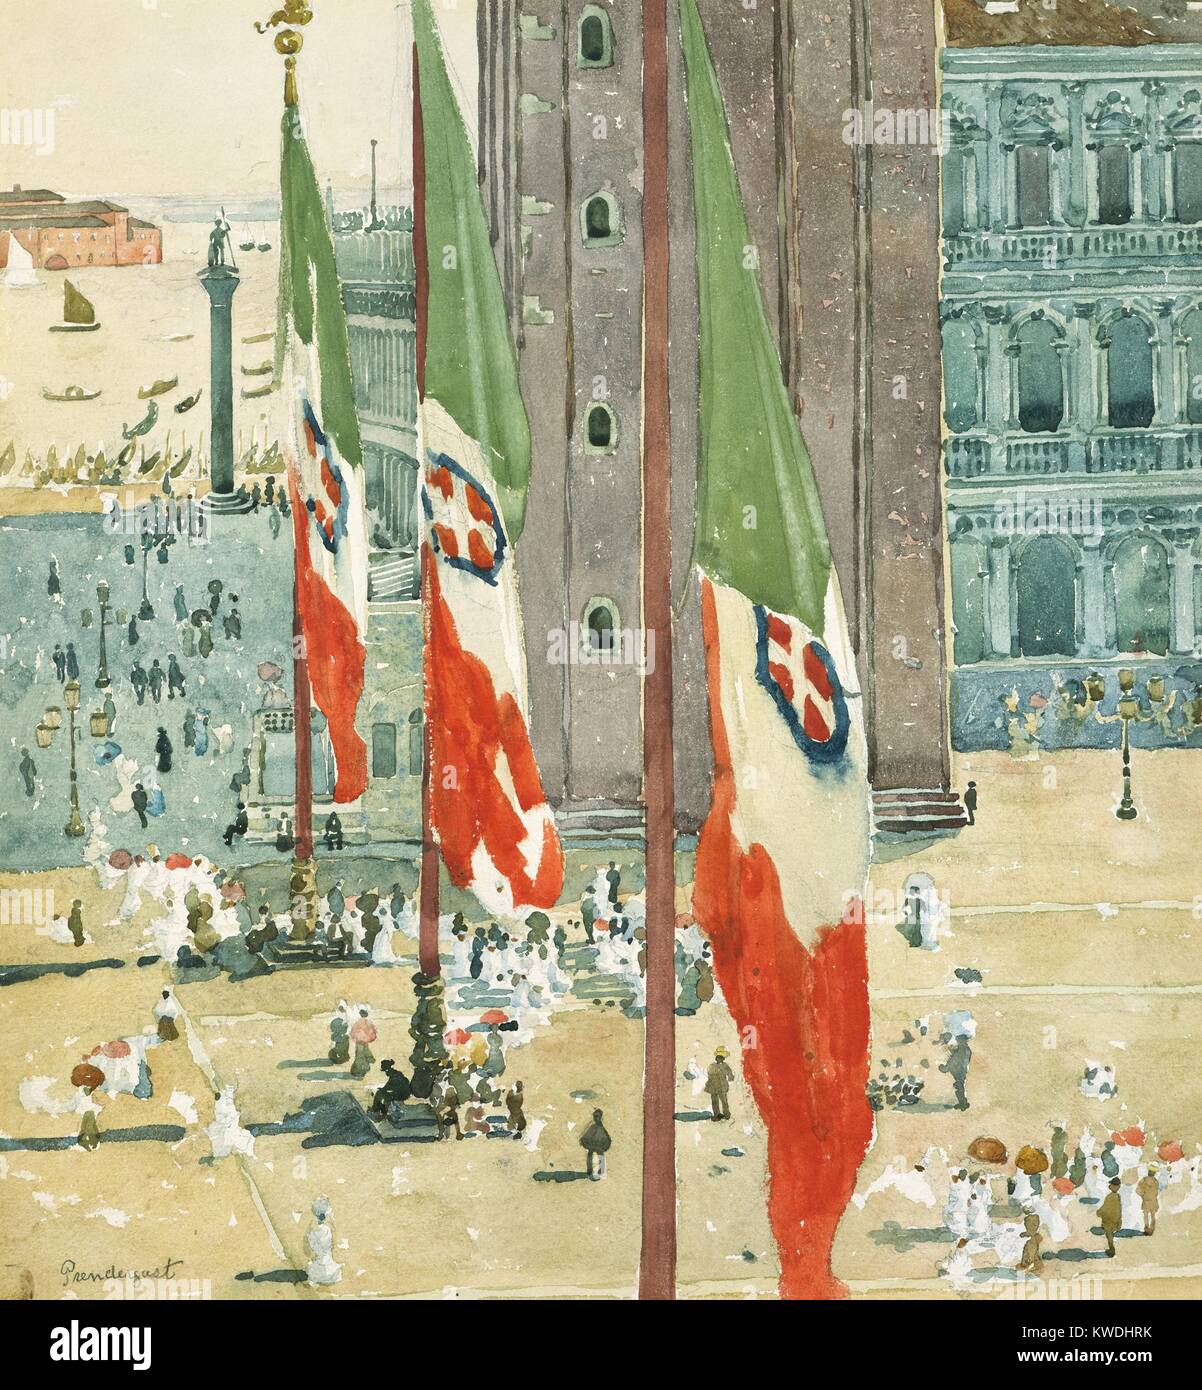 La PIAZZA DI SAN MARCO, par Maurice Brazil Prendergast, 1898-1899, American peinture, aquarelle. Drapeaux dominent la scène, qui se fond dans la lagune de Venise, avec la Place Saint Marc ci-dessous (BSLOC 2017 7 147) Banque D'Images